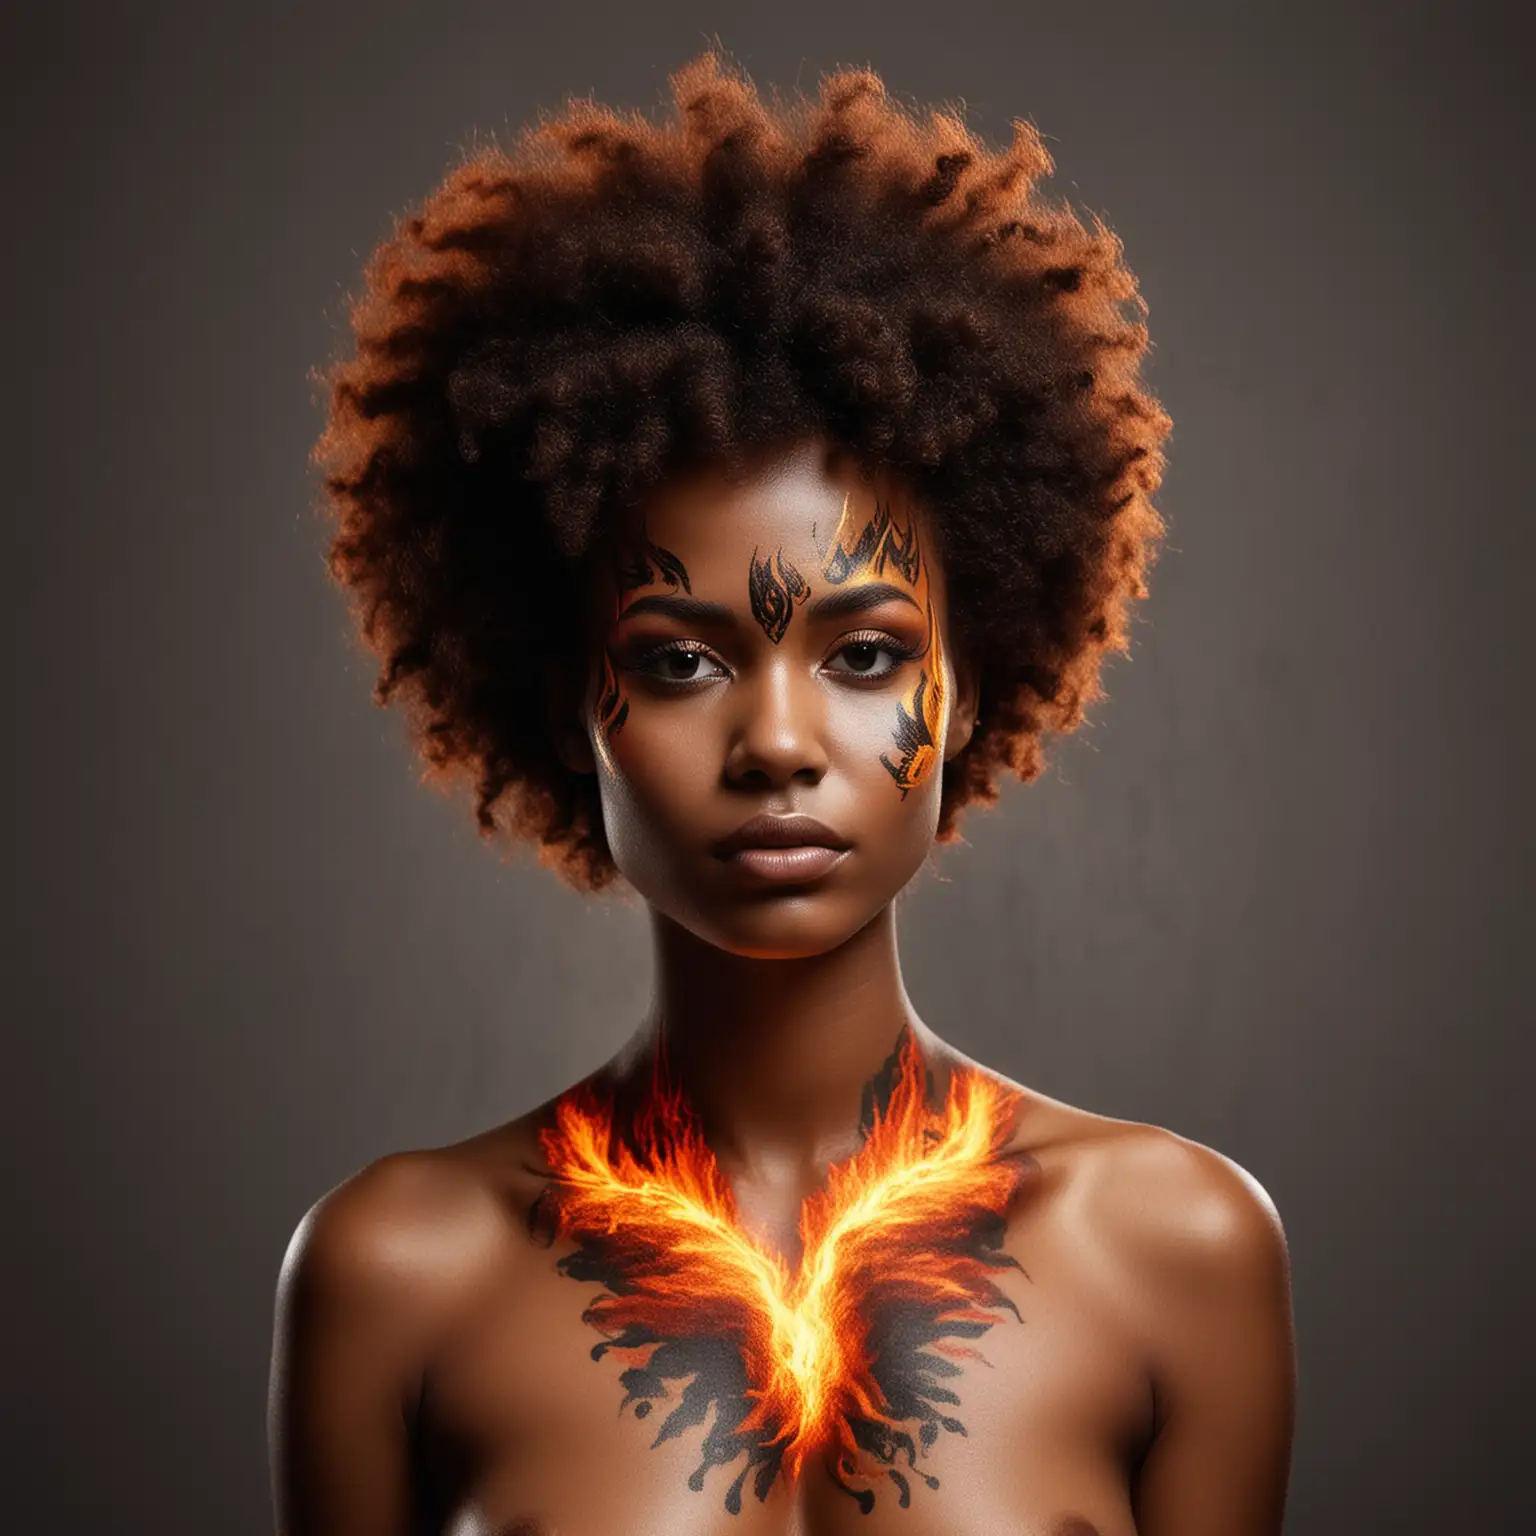 девушка с афро волосами на шее и лице нарисован боди арт в виде огня
